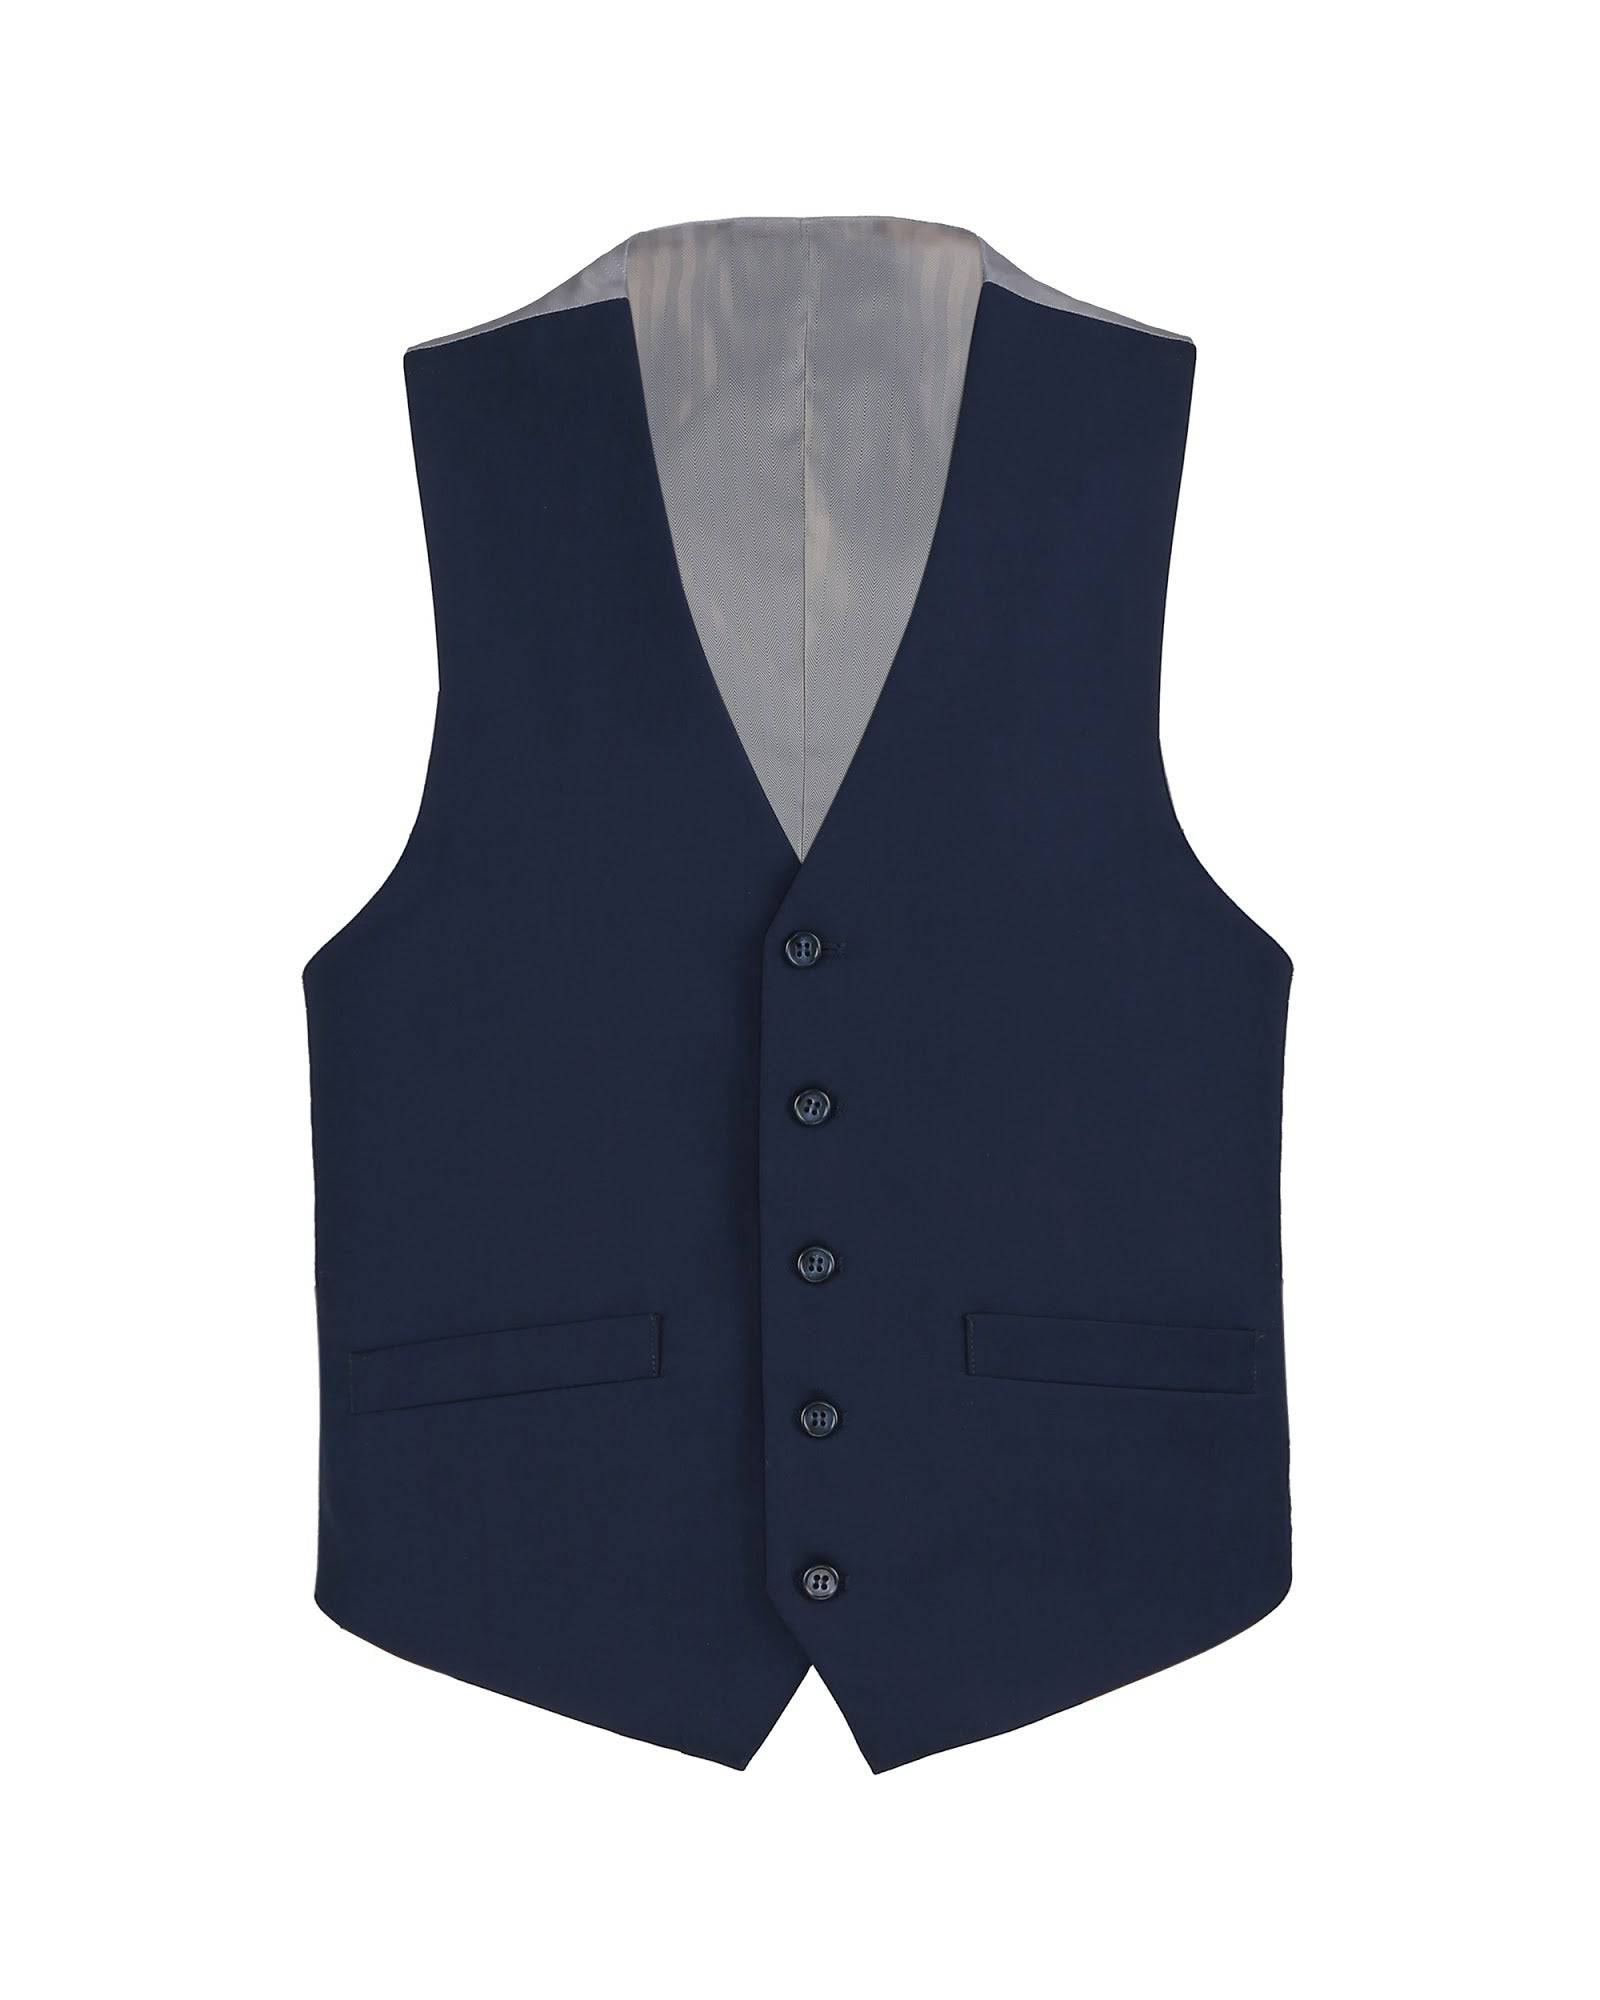 Suit Vest In Navy - Rainwater's Men's Clothing and Tuxedo Rental